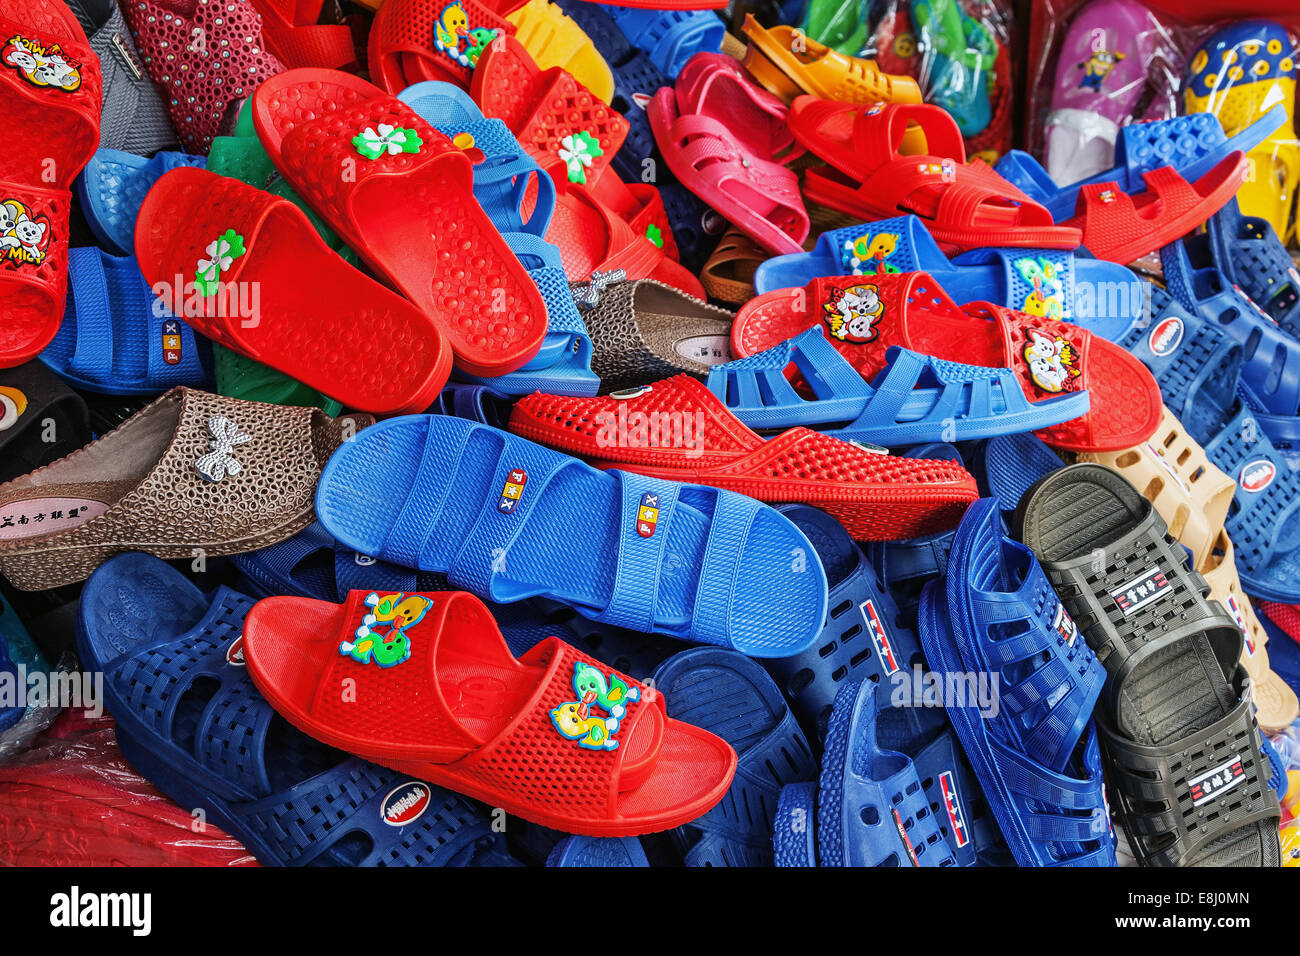 CHONGQING, CHINE - septembre 2, 2014 : chaussures colorées de la production chinoise à un magasin local de Chongqing, Chine, le 2 septembre, 2 Banque D'Images